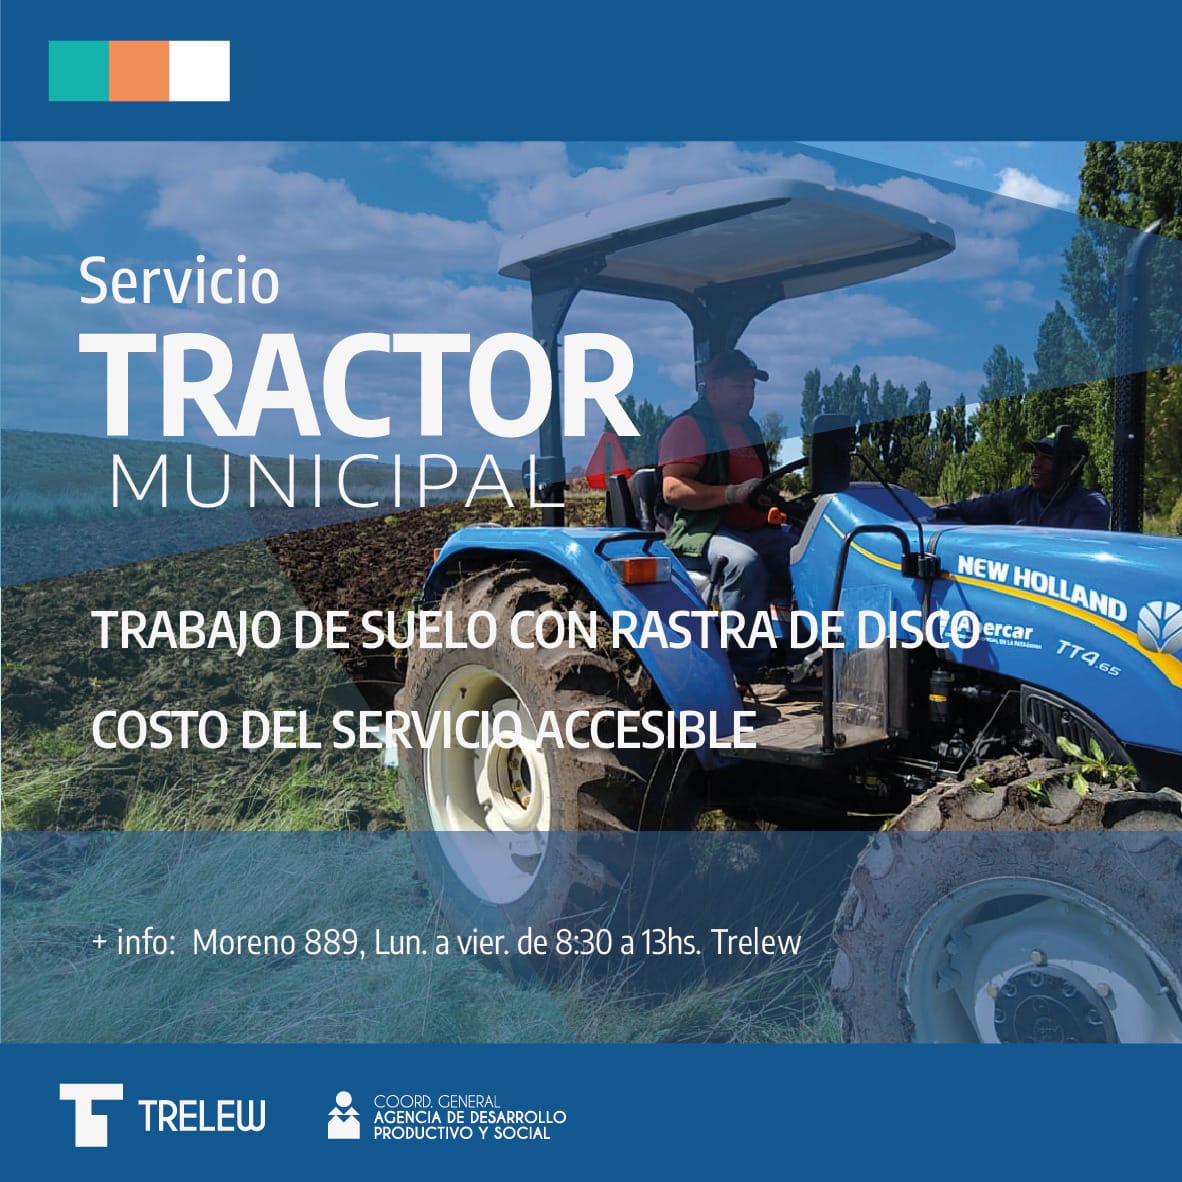 El Municipio de Trelew ofrece el servicio de maquinaria agrícola a pequeños productores